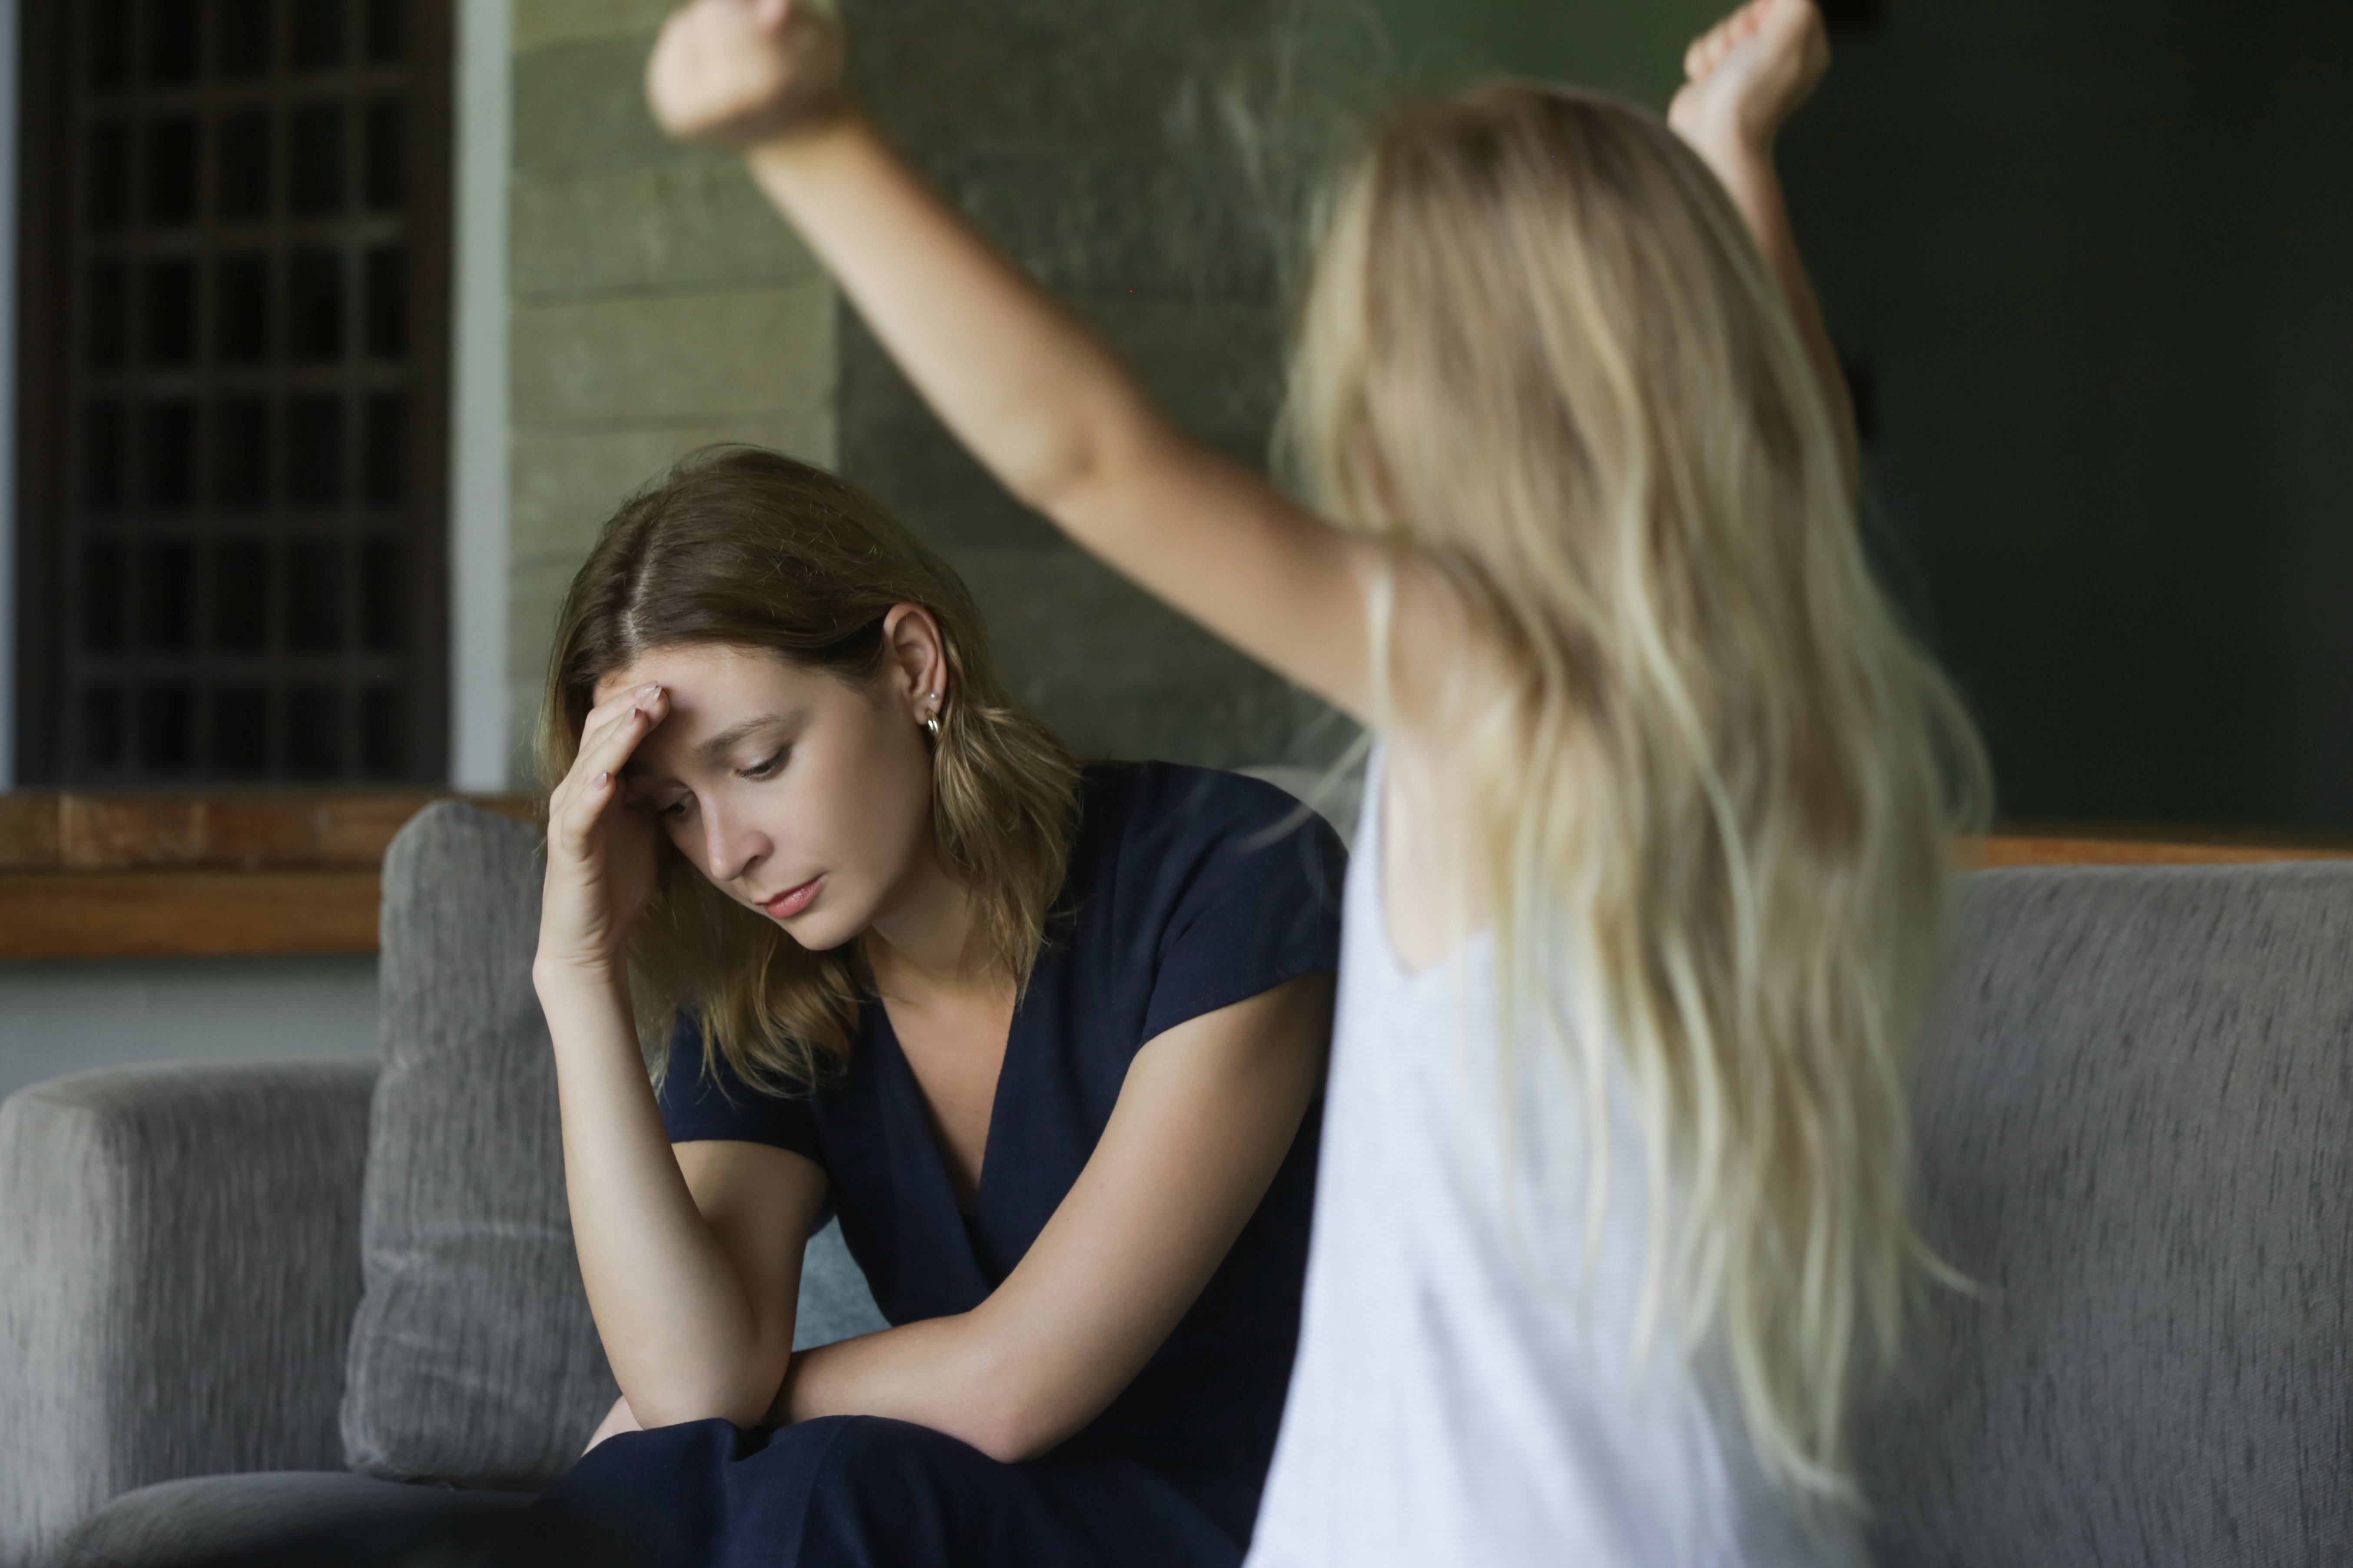 Une jeune fille qui pique une colère devant sa maman fatiguée | Source : Shutterstock